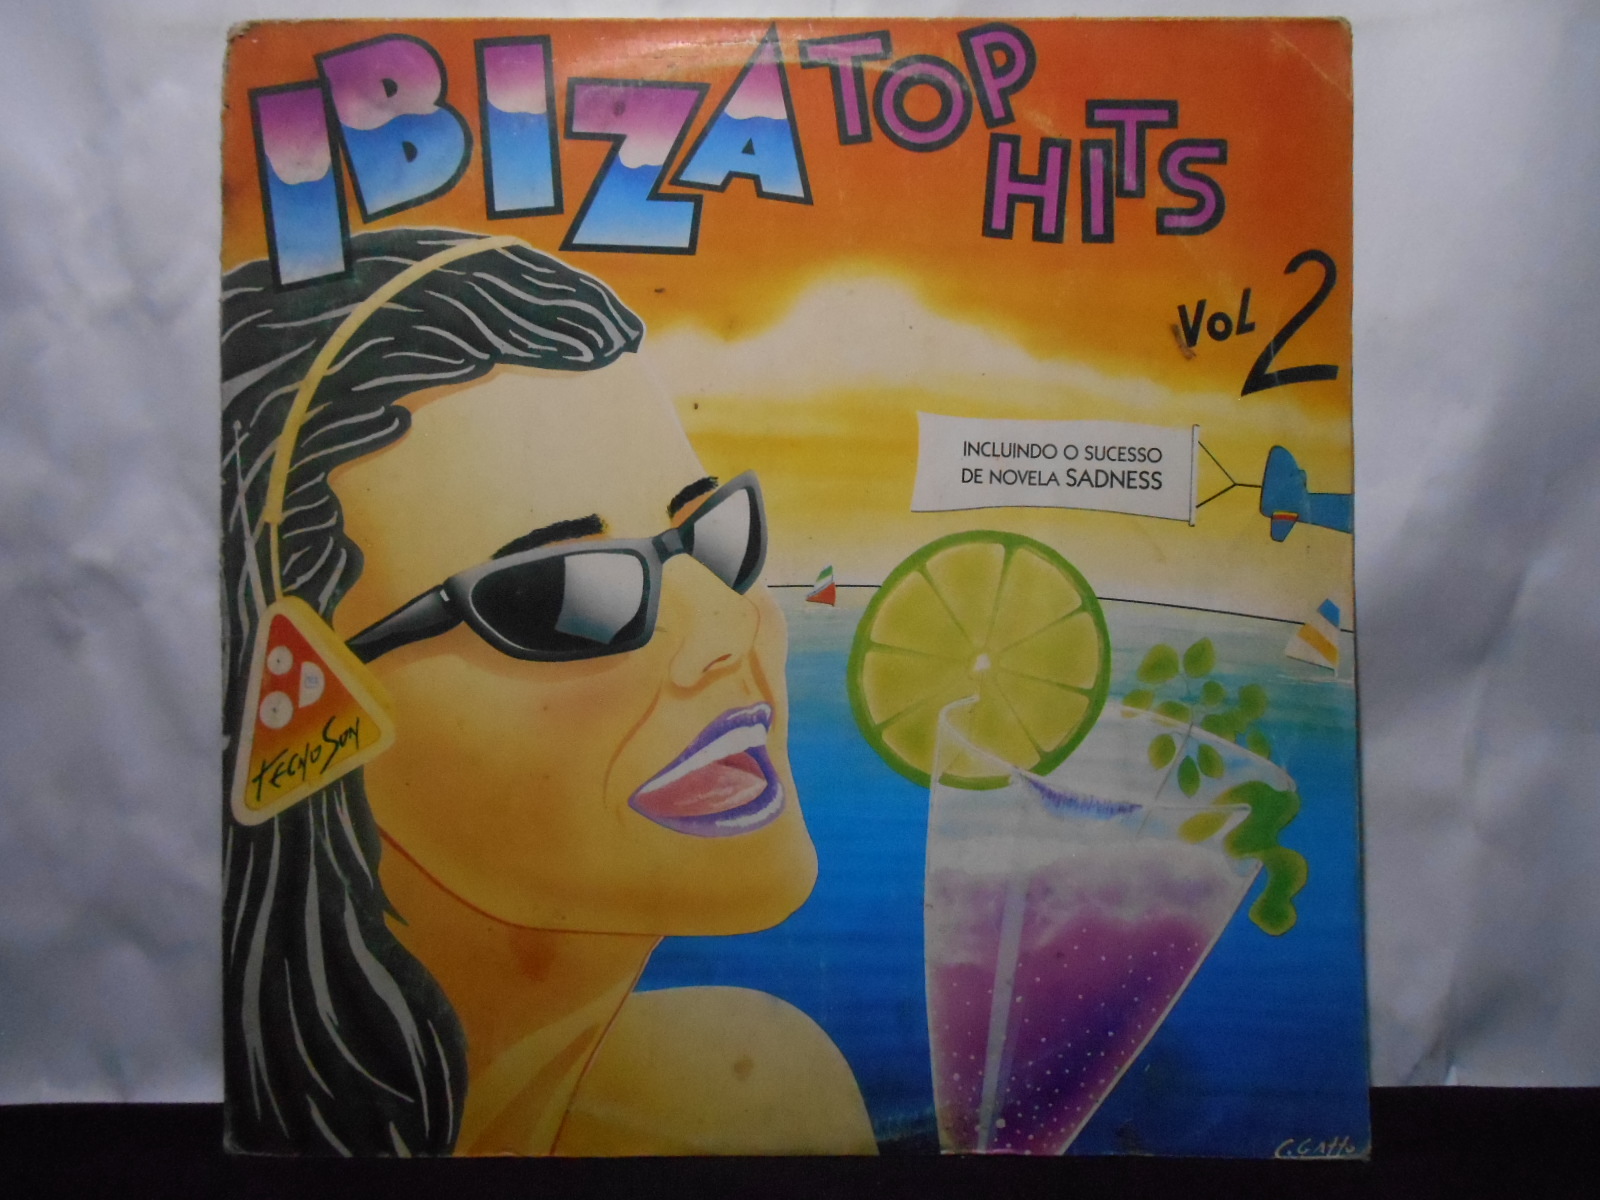 Vinil - Ibiza Top Hits Vol 2